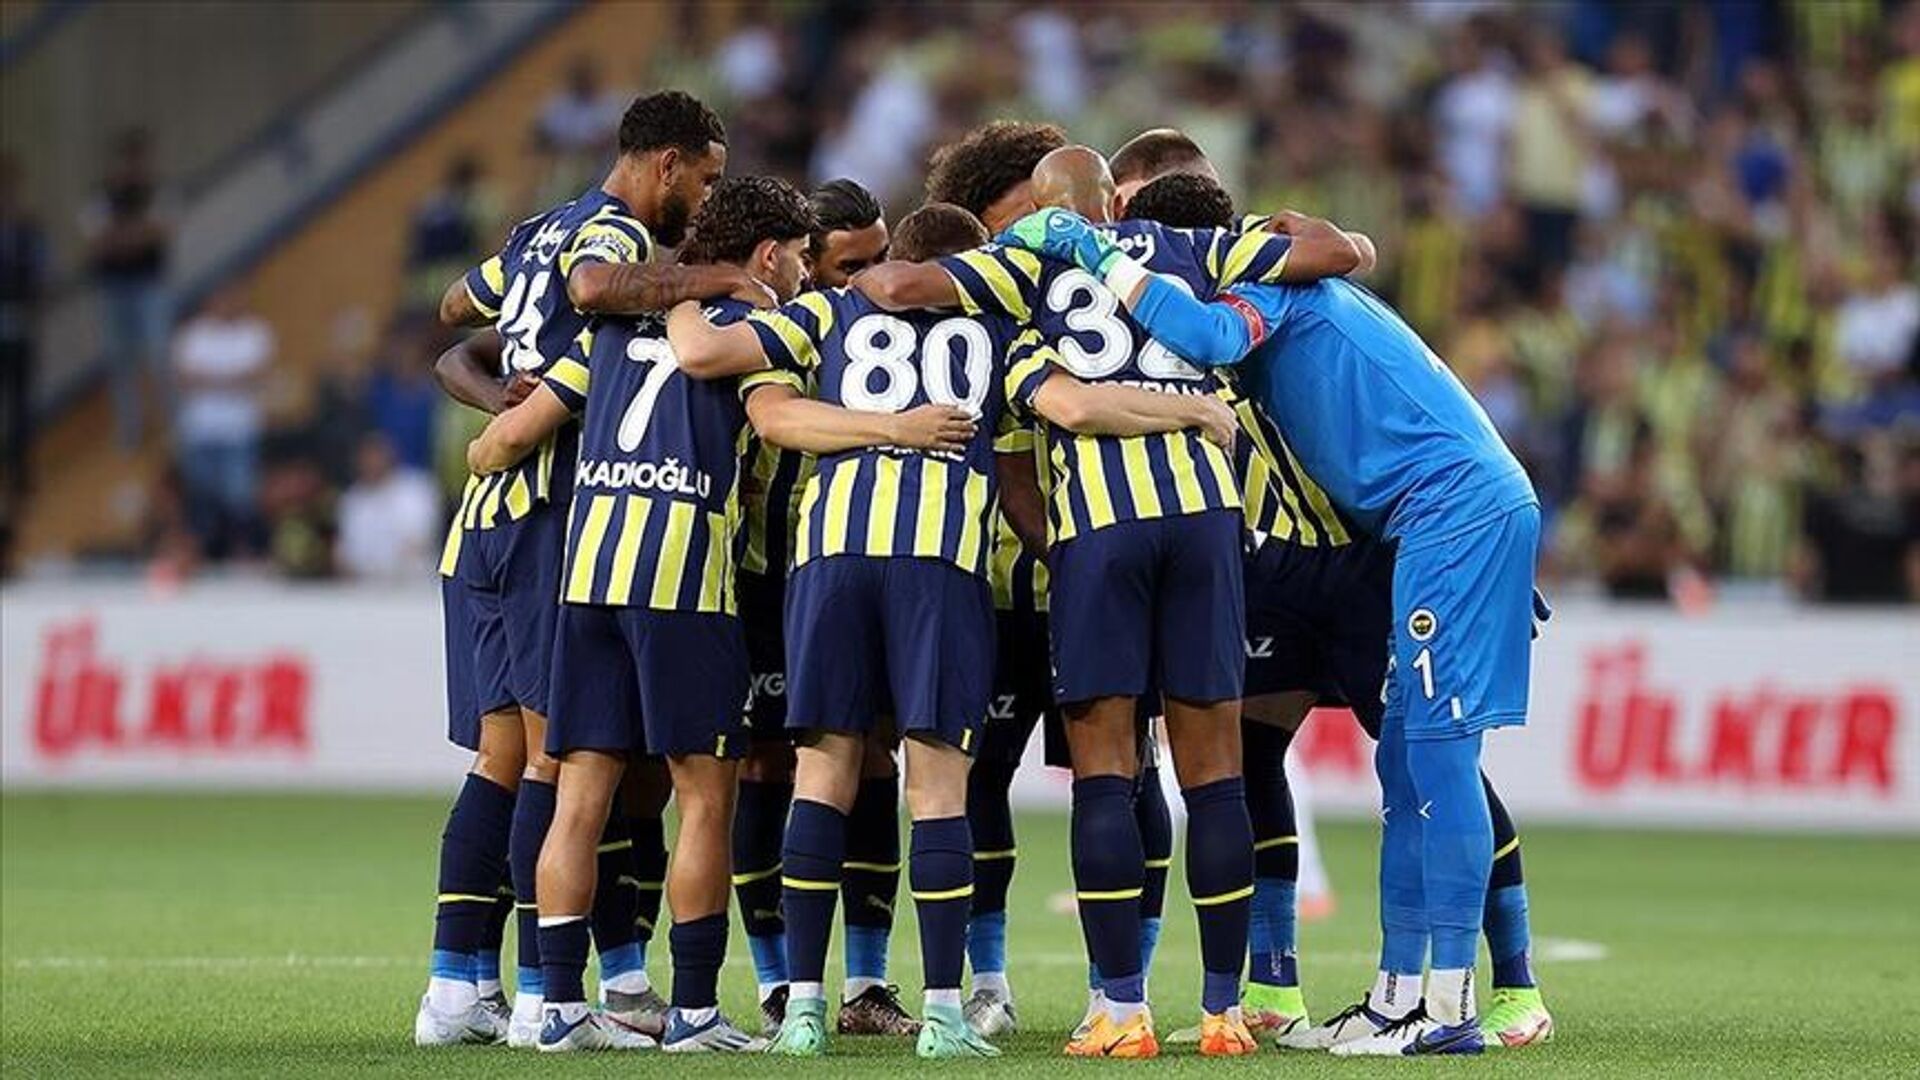 Slovacko - Fenerbahçe maçının yazar yorumları! Serdar Ali ...